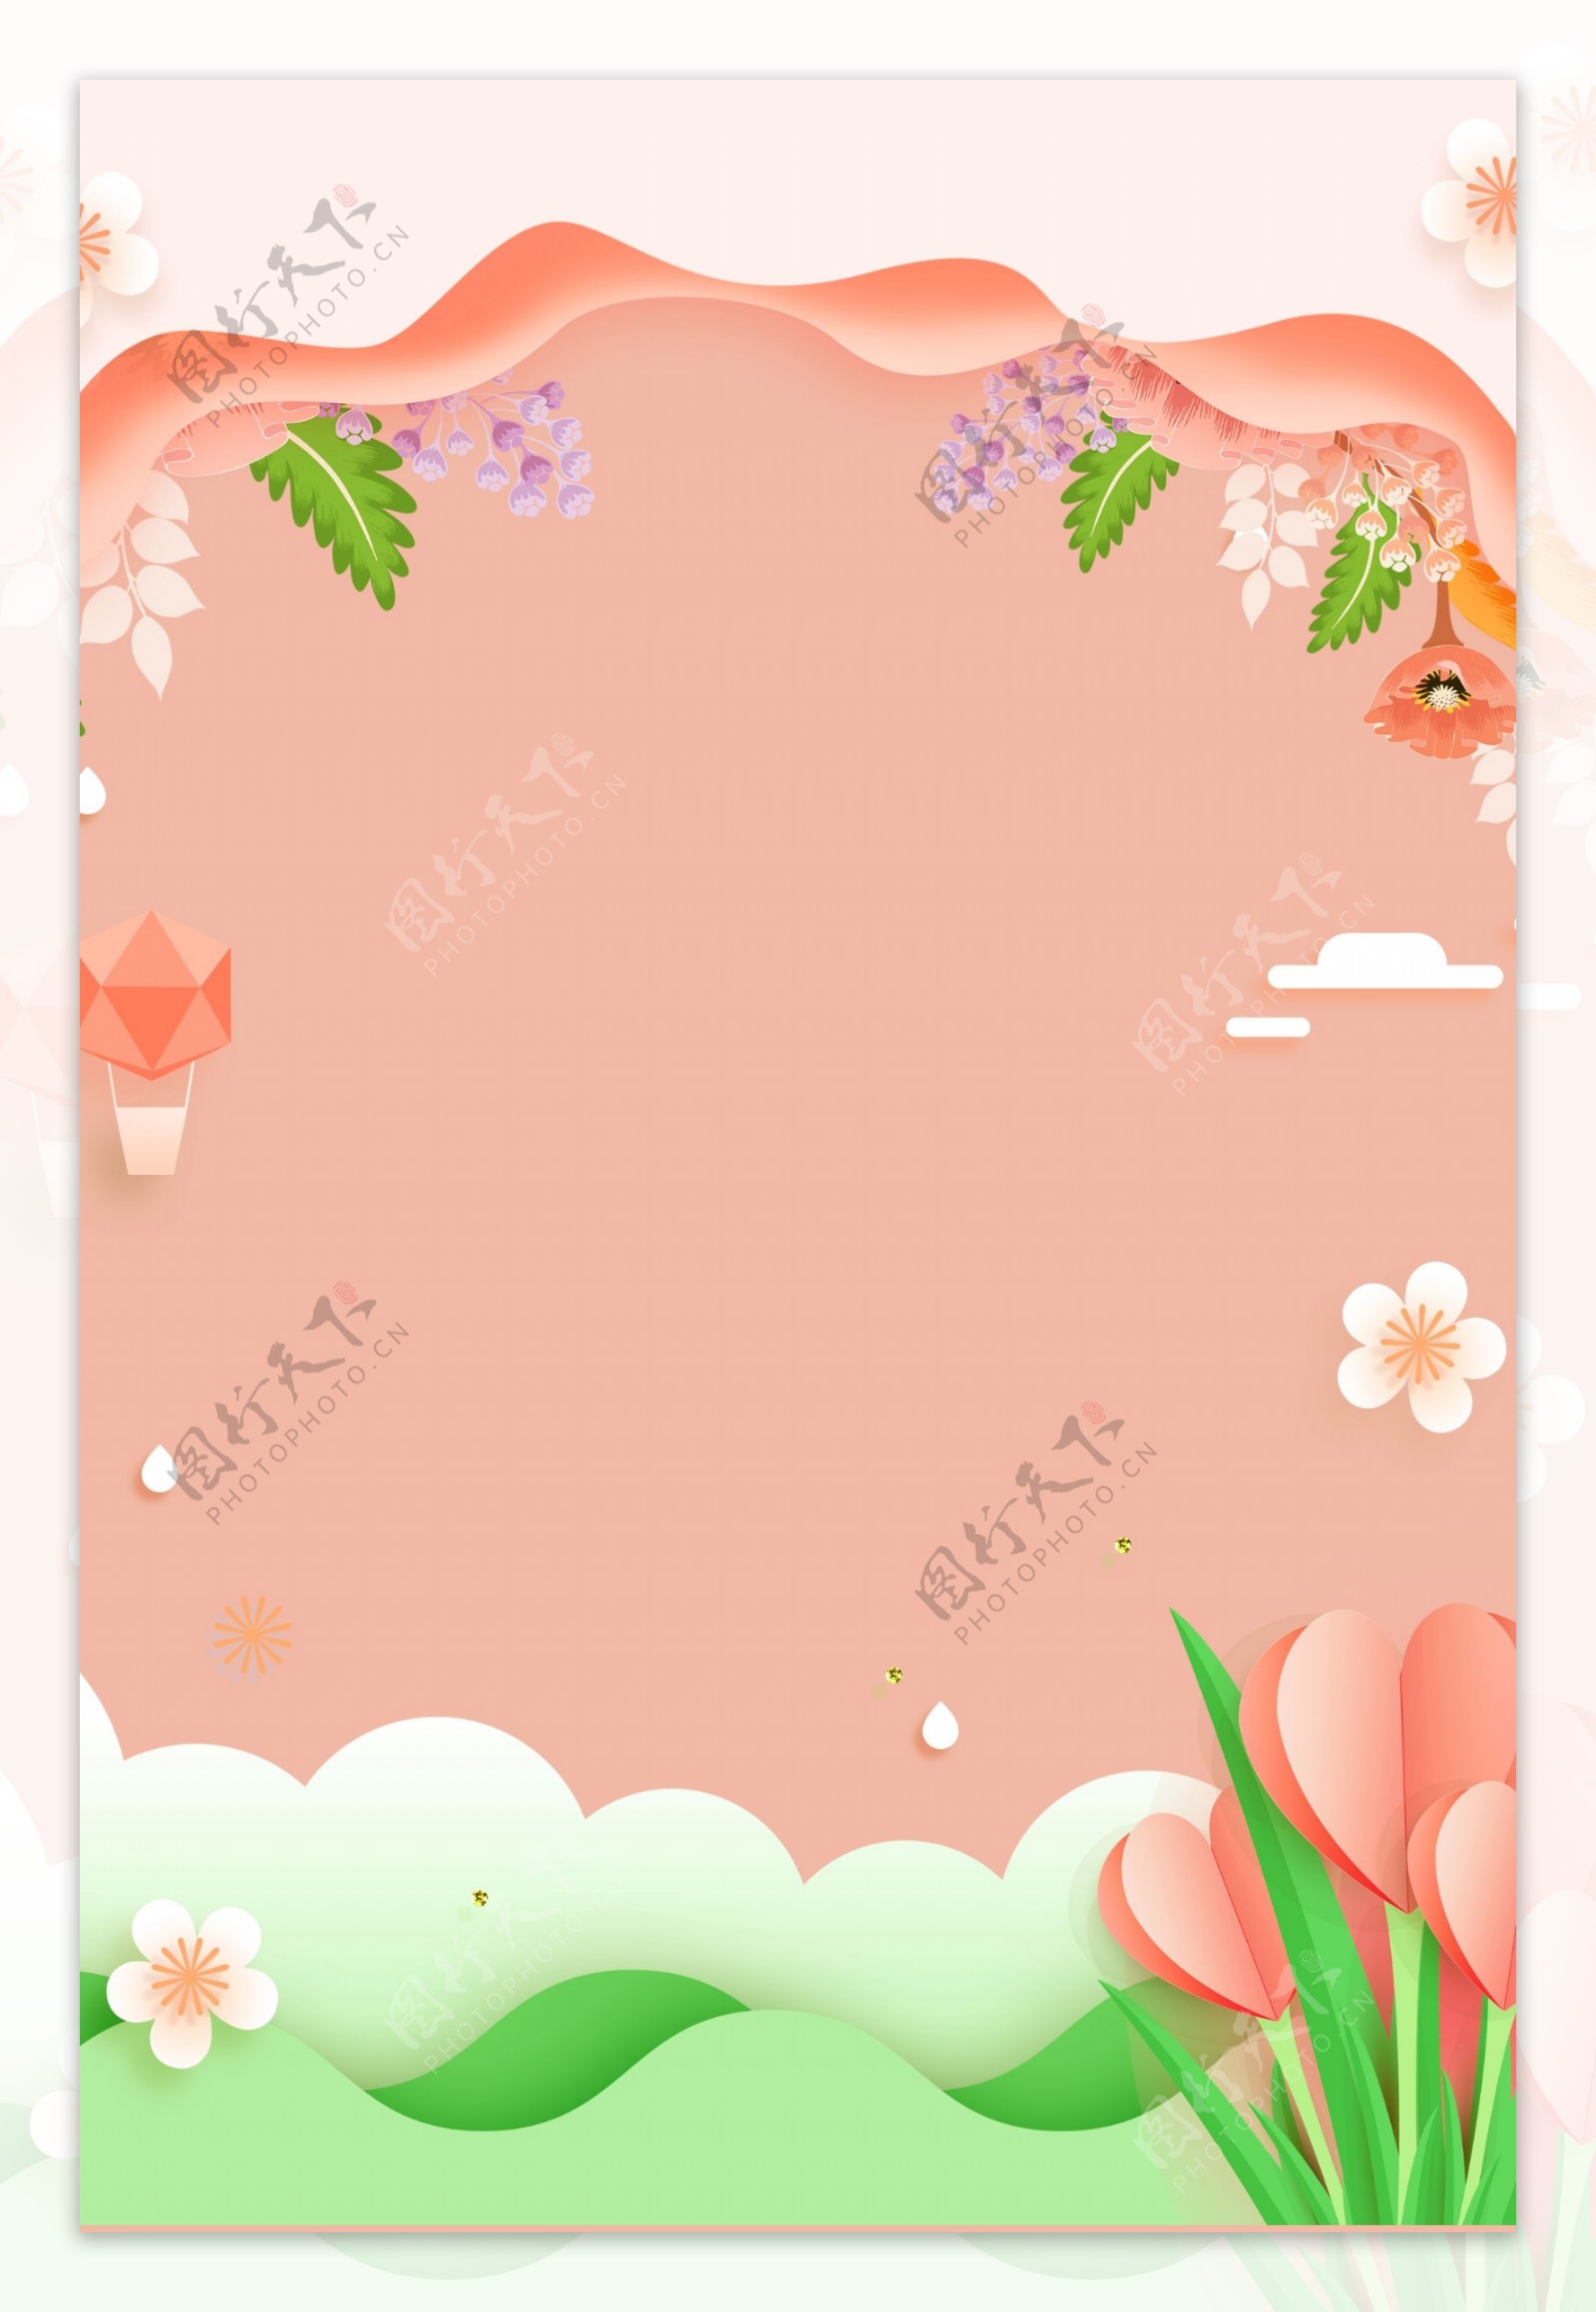 服装粉红色背景折纸风海报banner背景